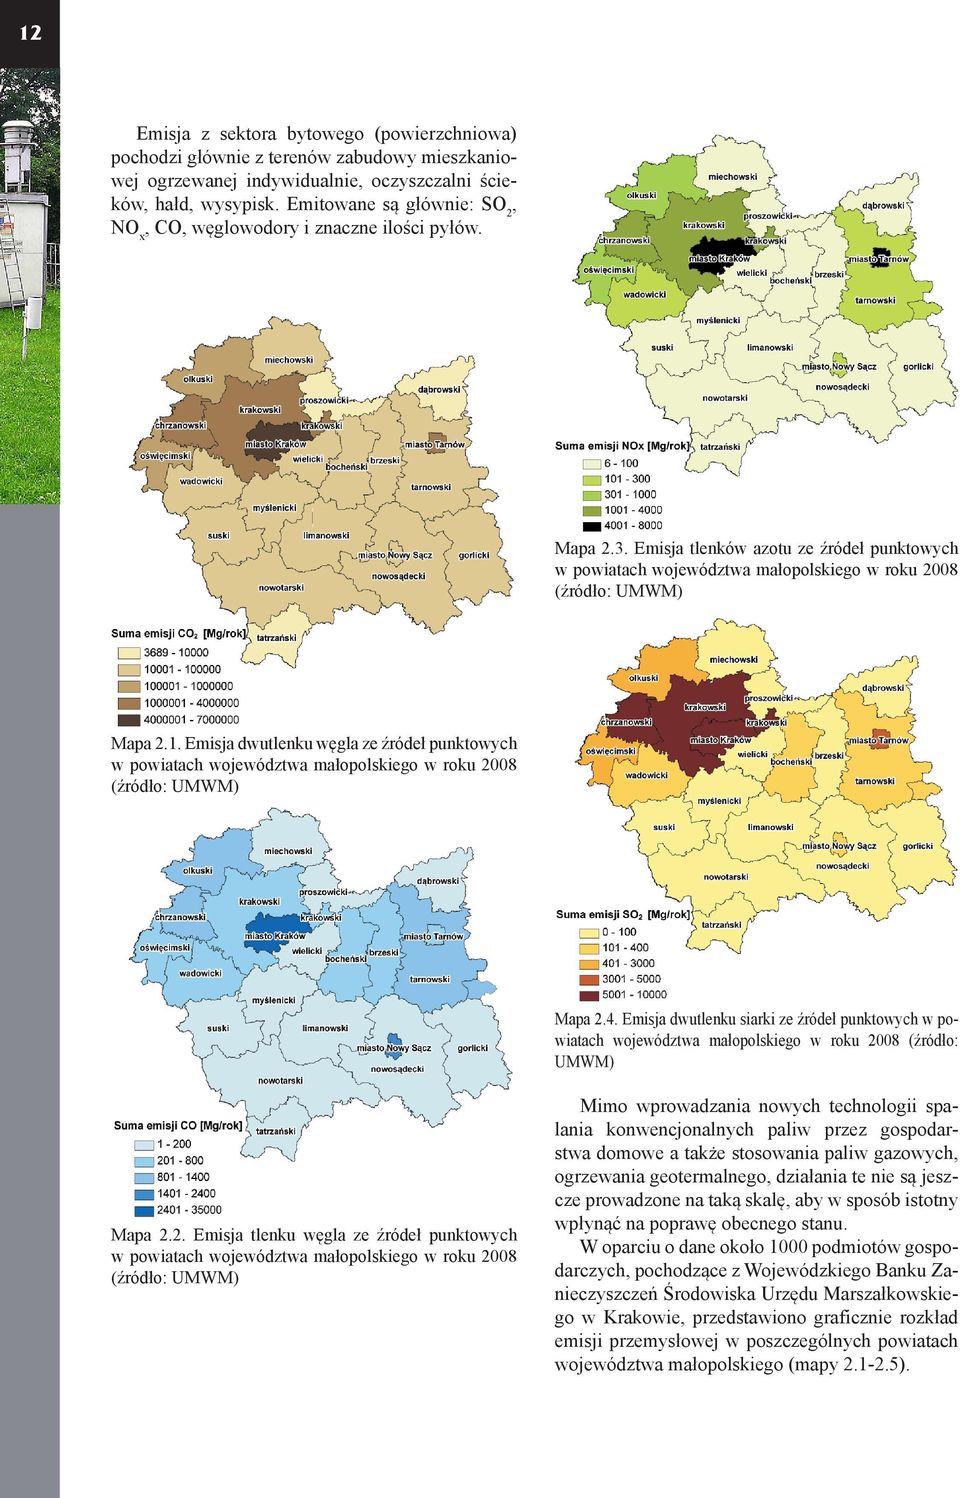 Emisja dwutlenku węgla ze źródeł punktowych w powiatach województwa małopolskiego w roku 2008 (źródło: UMWM) Mapa 2.4.